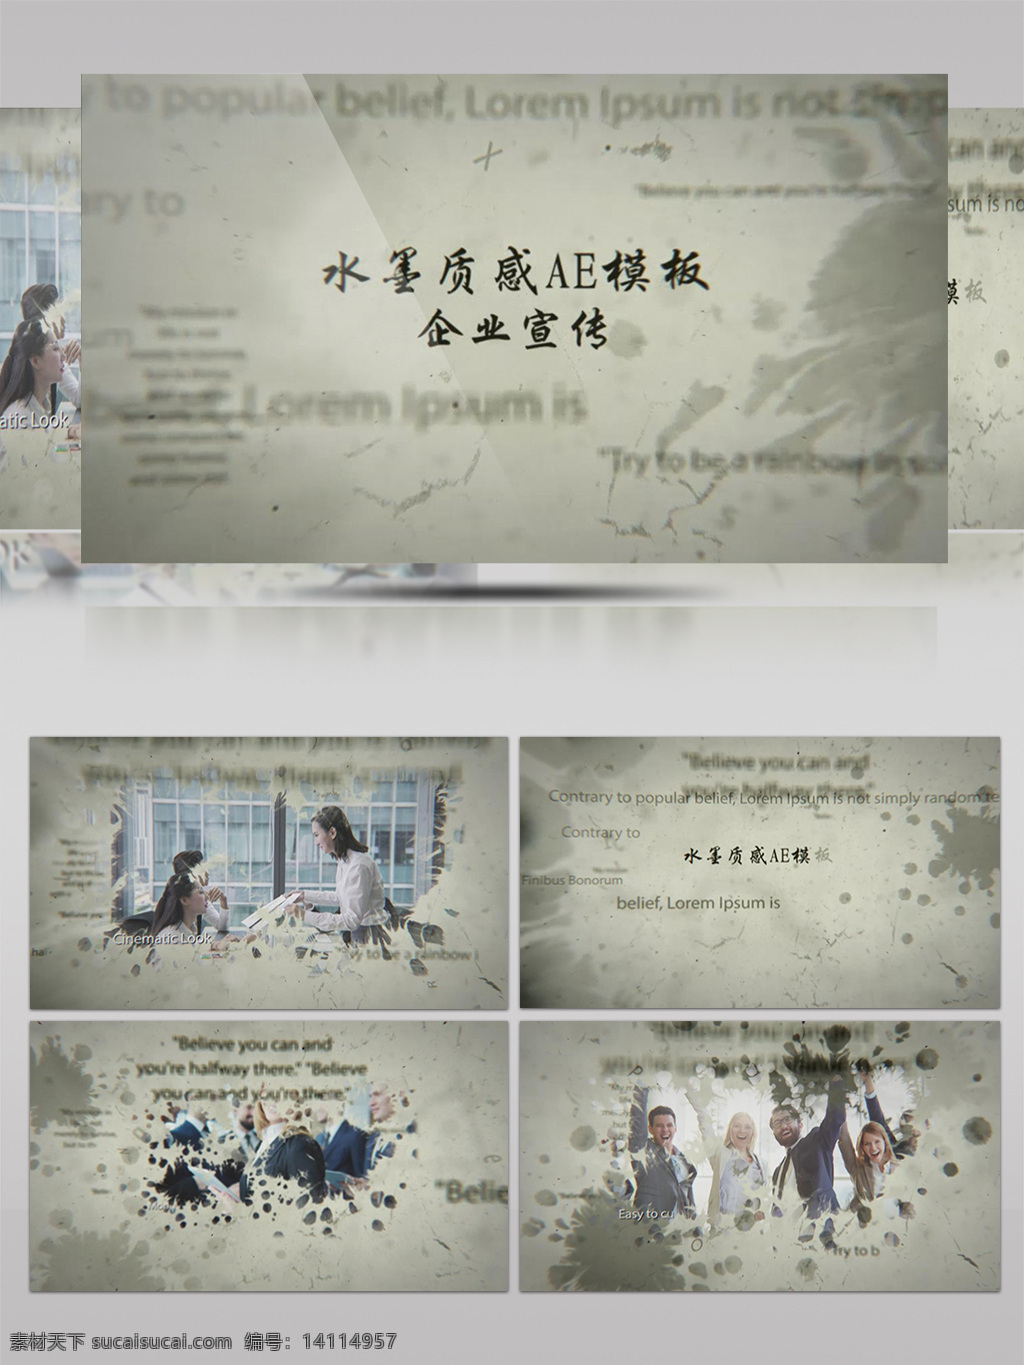 中国 风 水墨 企业 图文 宣传 ae 模板 企业宣传 团队宣传 会议展示 科技会议 产品宣传